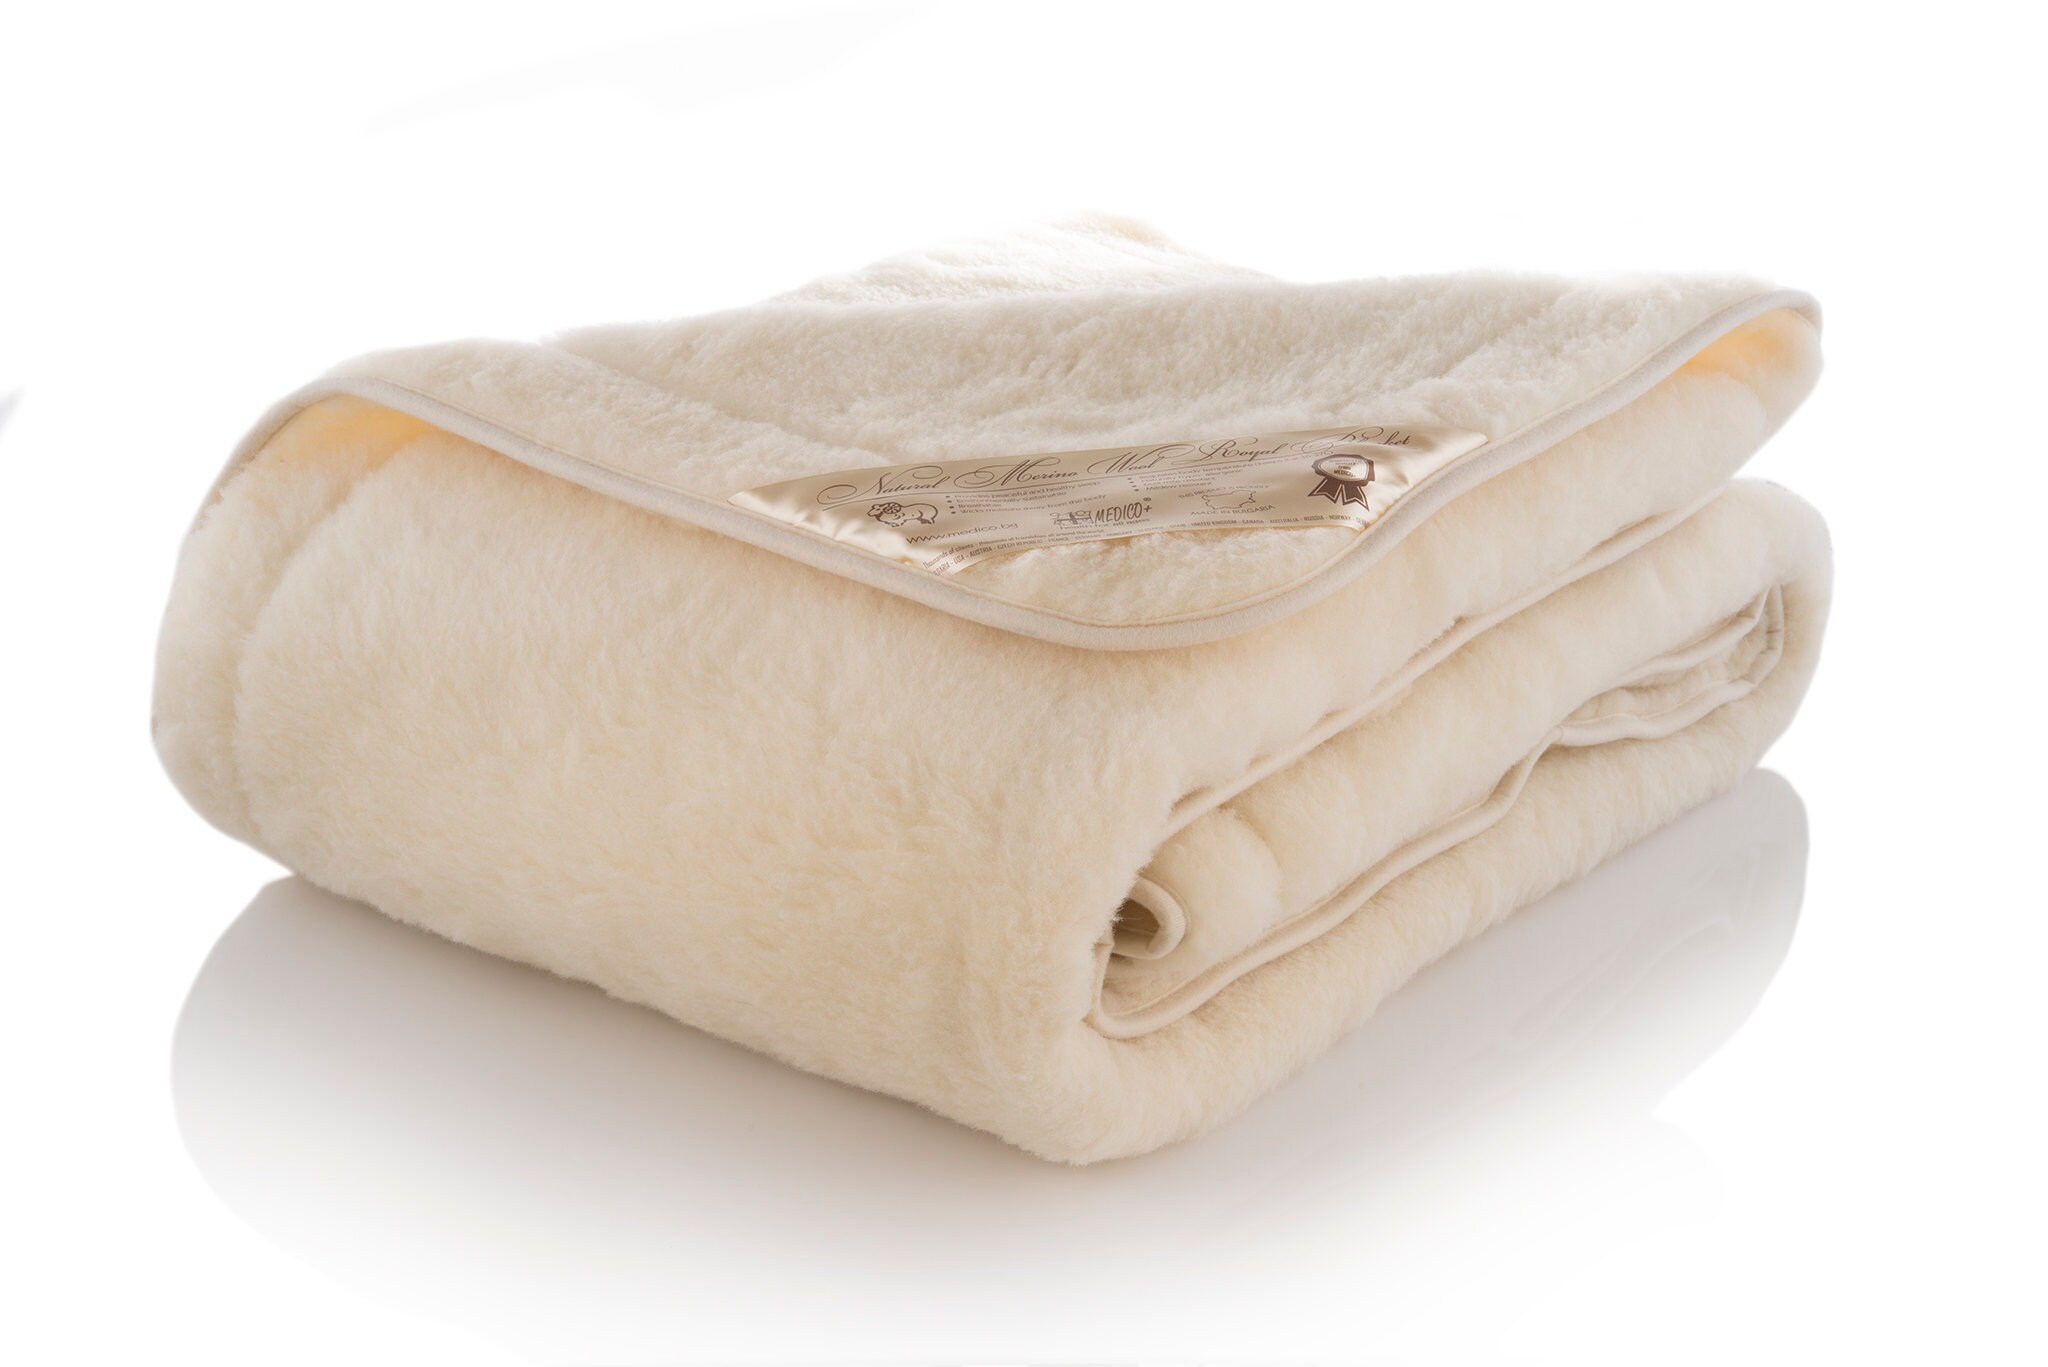 Wool Duvet, Merino Wool Blanket, Bulgarian Wool Blanket, Organic Wool  Blanket, Winter Blanket, Baby Blanket, Family Gift, Wool Blanket King 